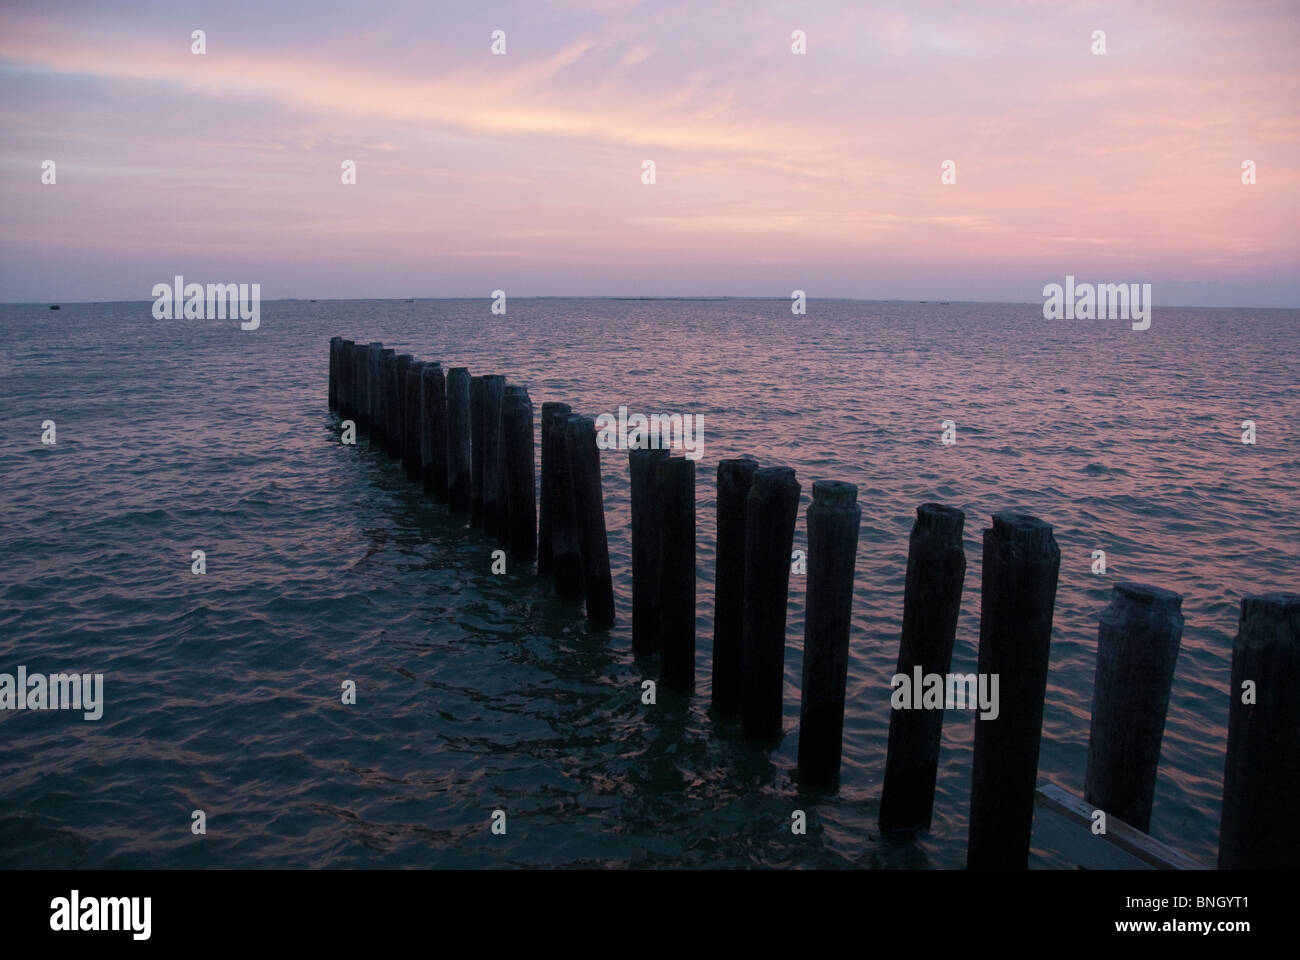 Chesapeake Bay at sunset Stock Photo